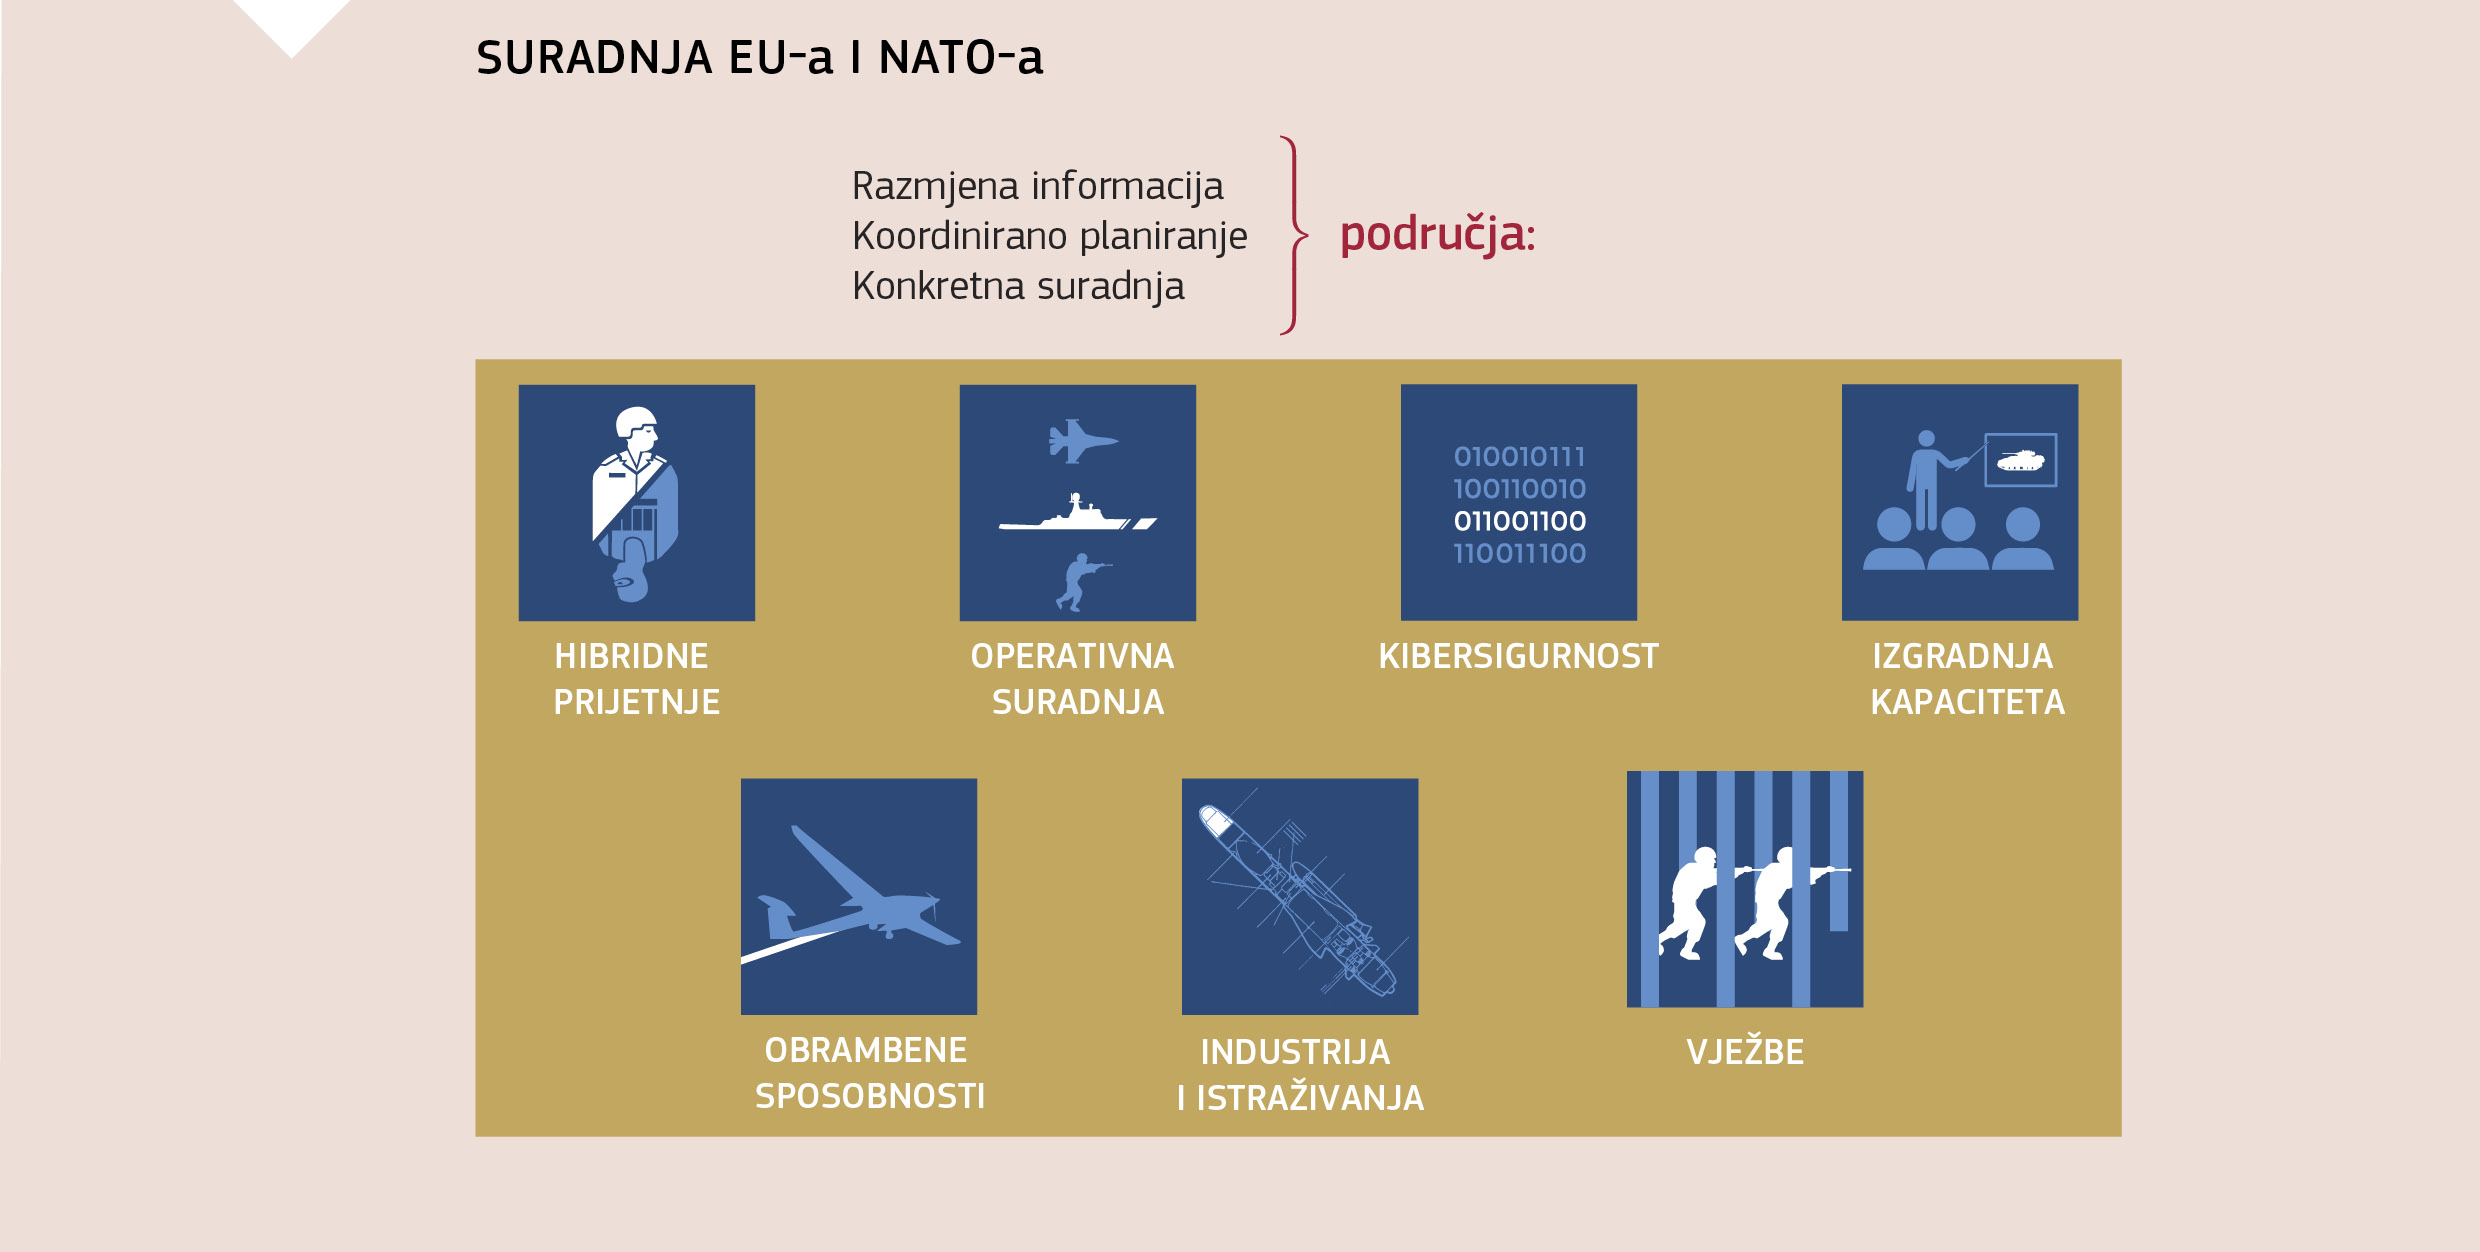 SURADNJA EU-a I NATO-a